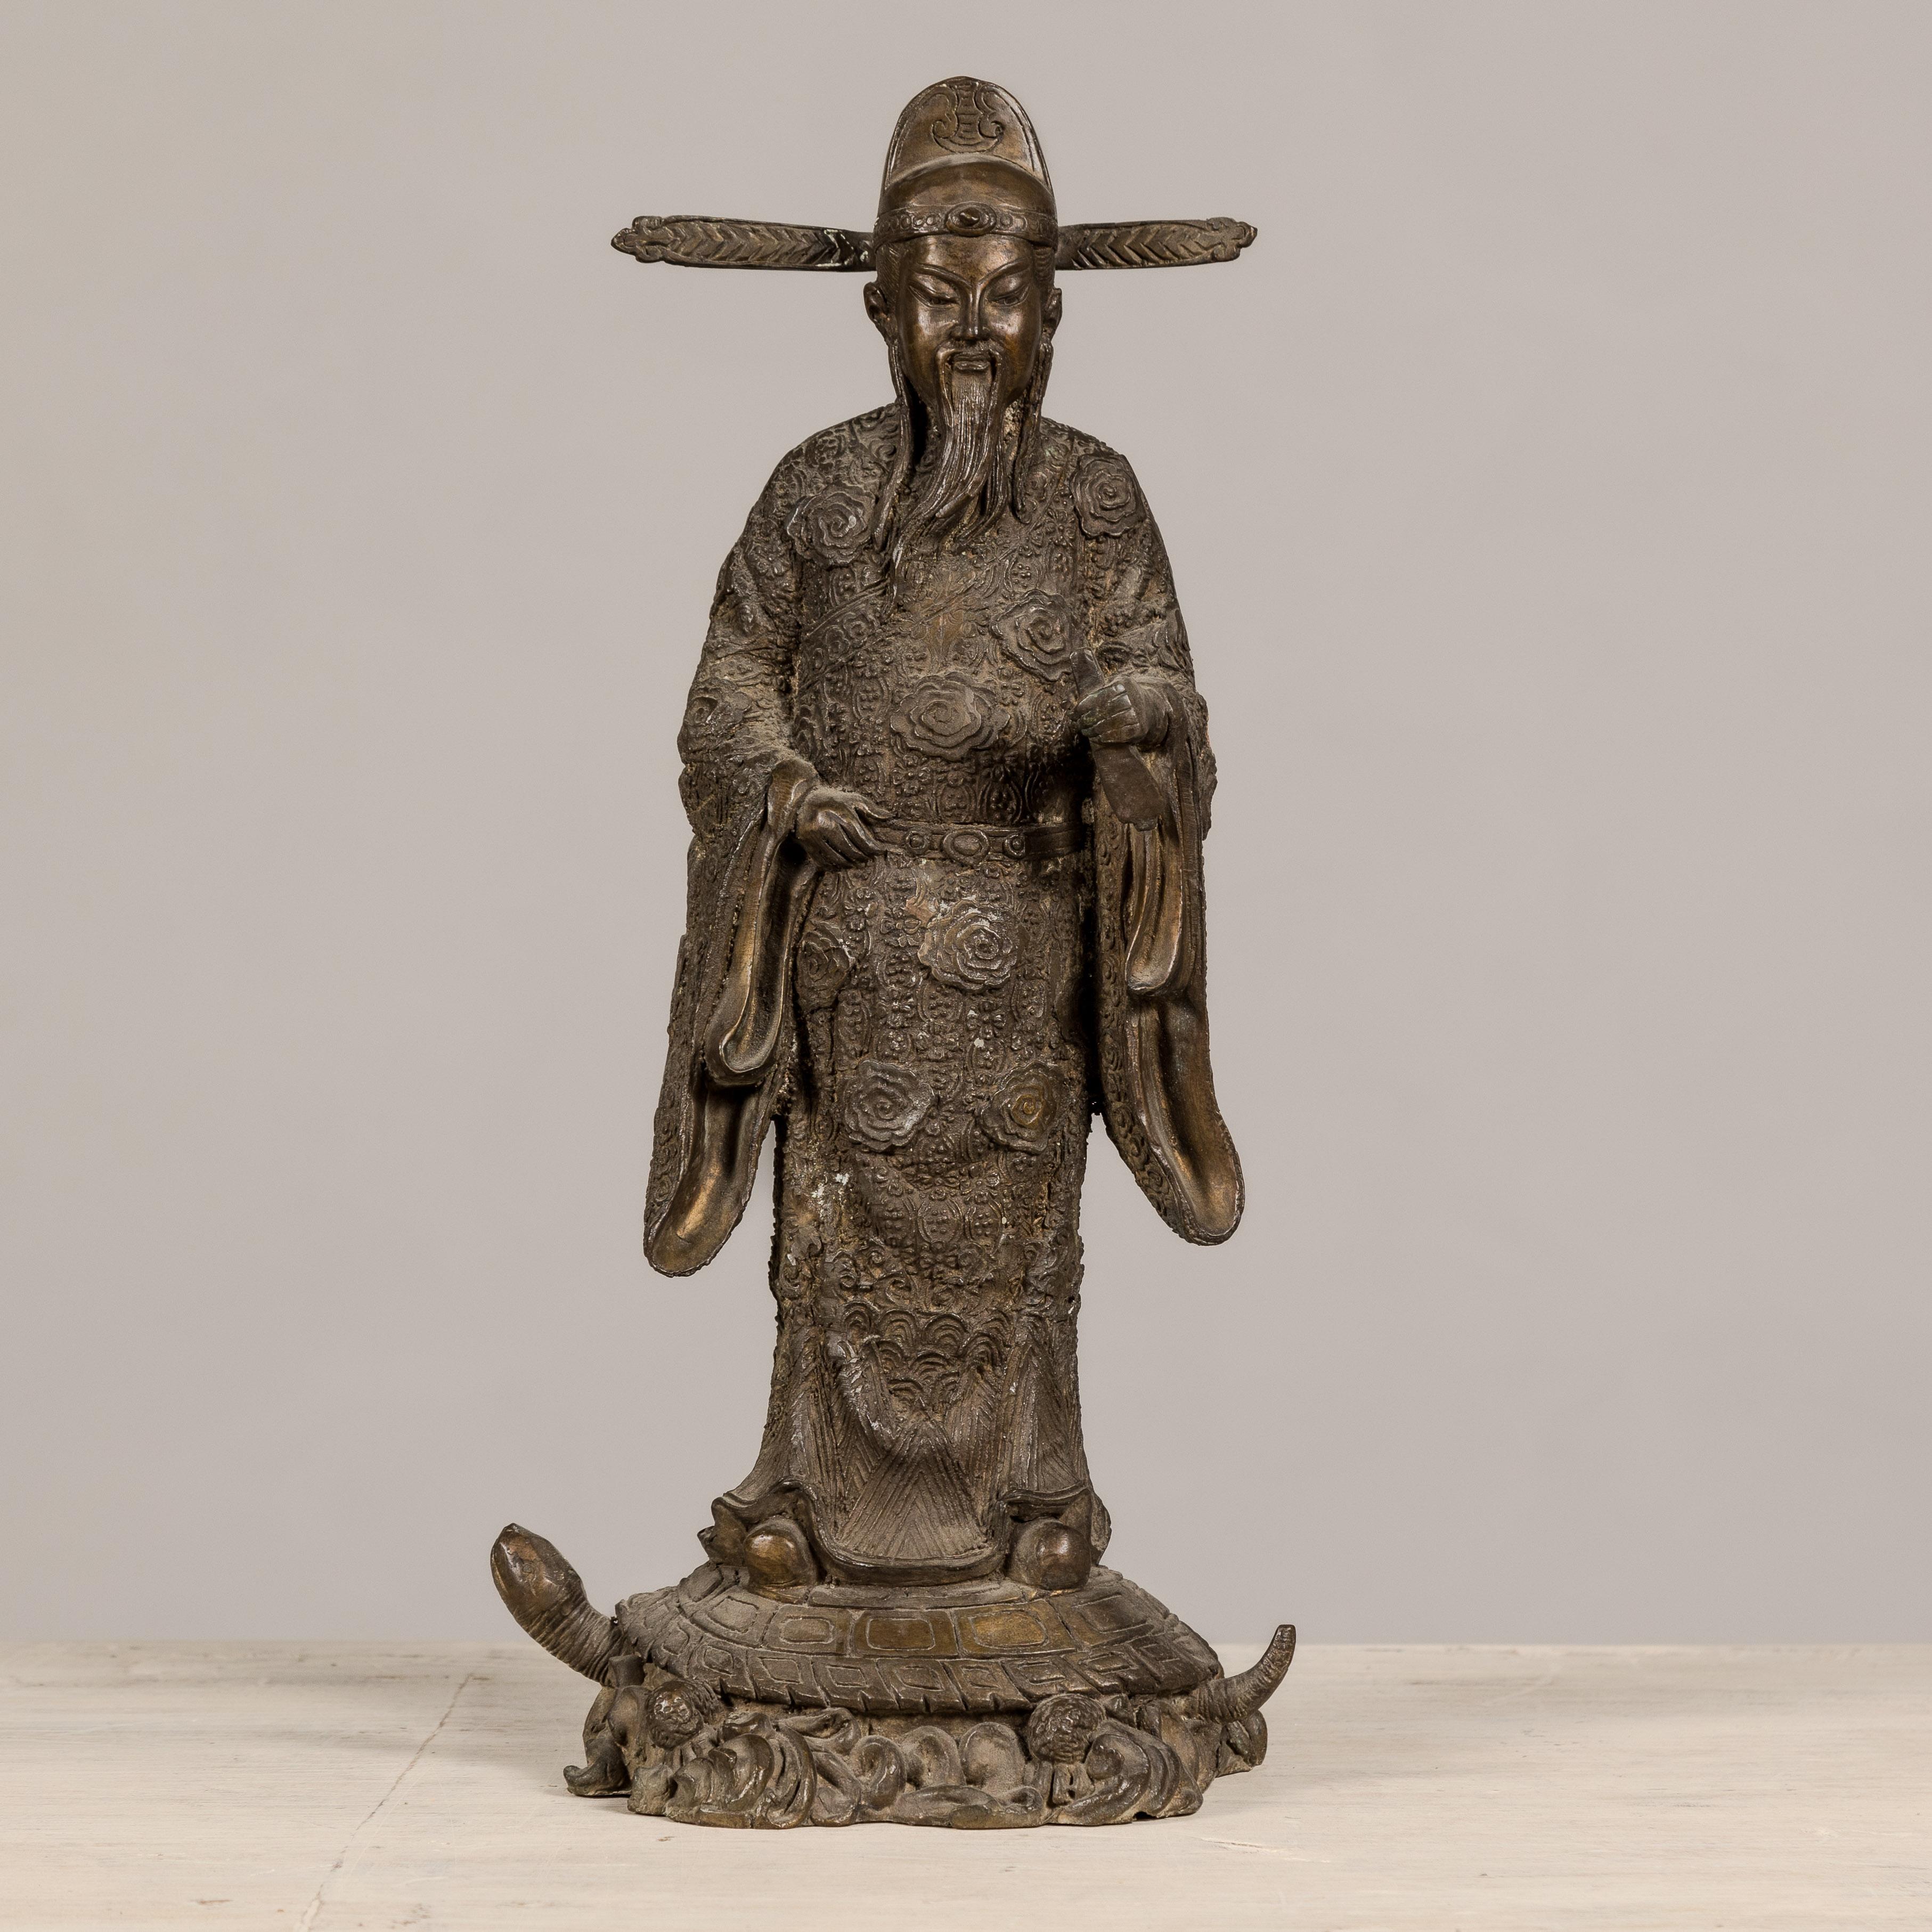 Statuette chinoise en bronze d'époque représentant un lettré debout sur une tortue. Cette statuette chinoise en bronze, qui représente un vieil érudit, est une pièce qui allie le symbolisme traditionnel à un travail artistique minutieux. 

La statue